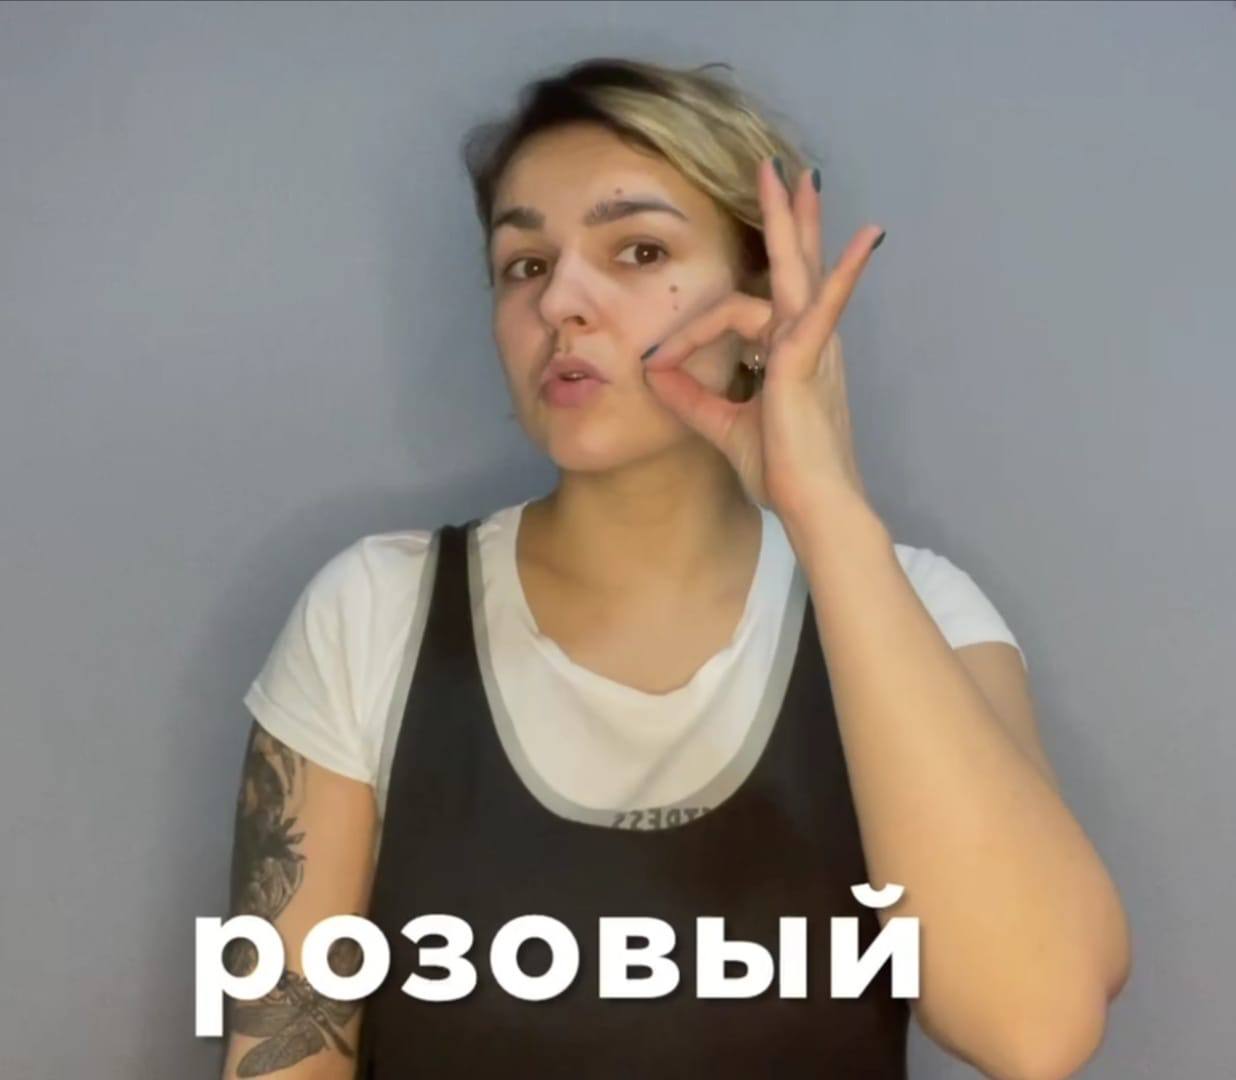 В апреле стартовало обучение слышащих родителей детей с нарушениями слуха навыкам русского жестового языка